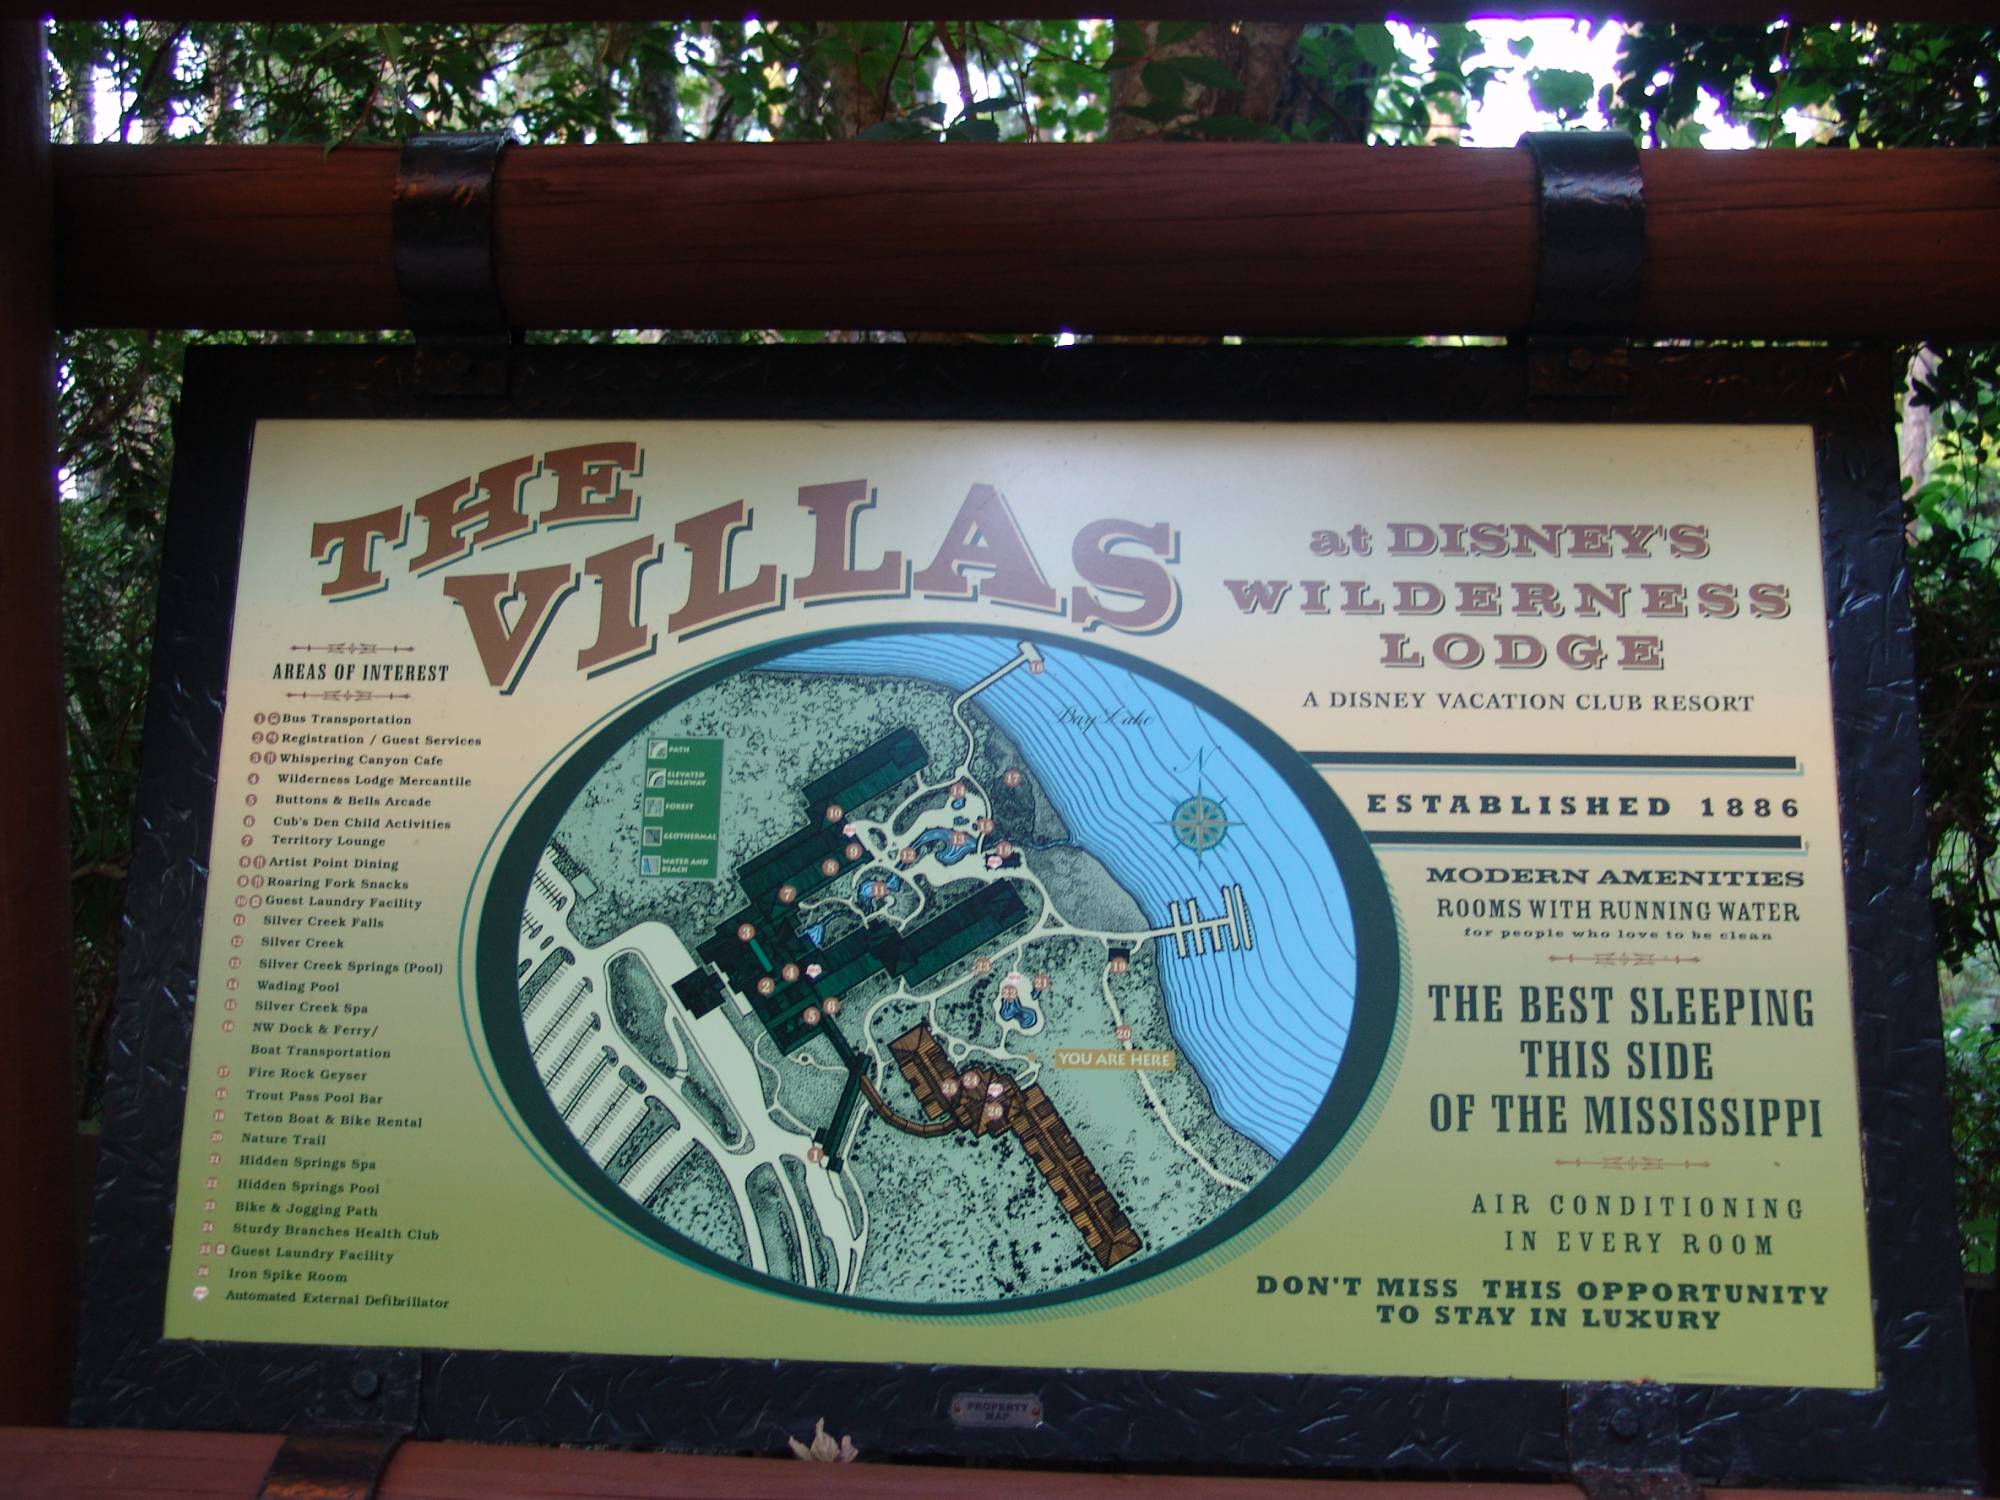 Wilderness Lodge - Villas sign